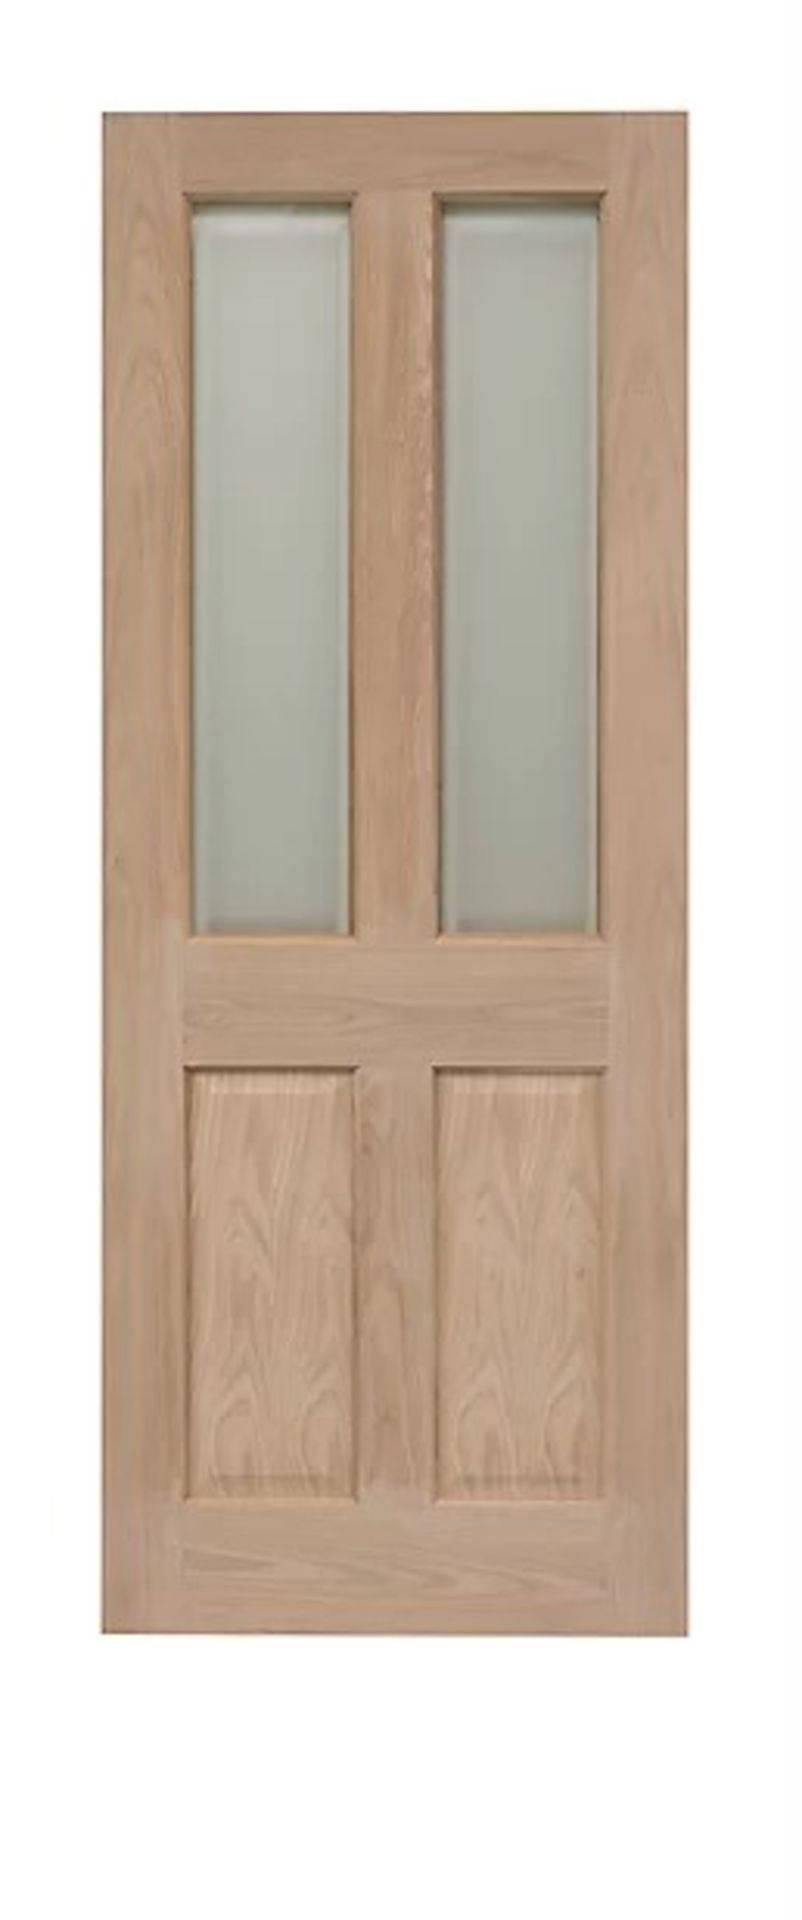 Victorian 4 Panel Oak Glzd Door 2040 x 726mm - ER45